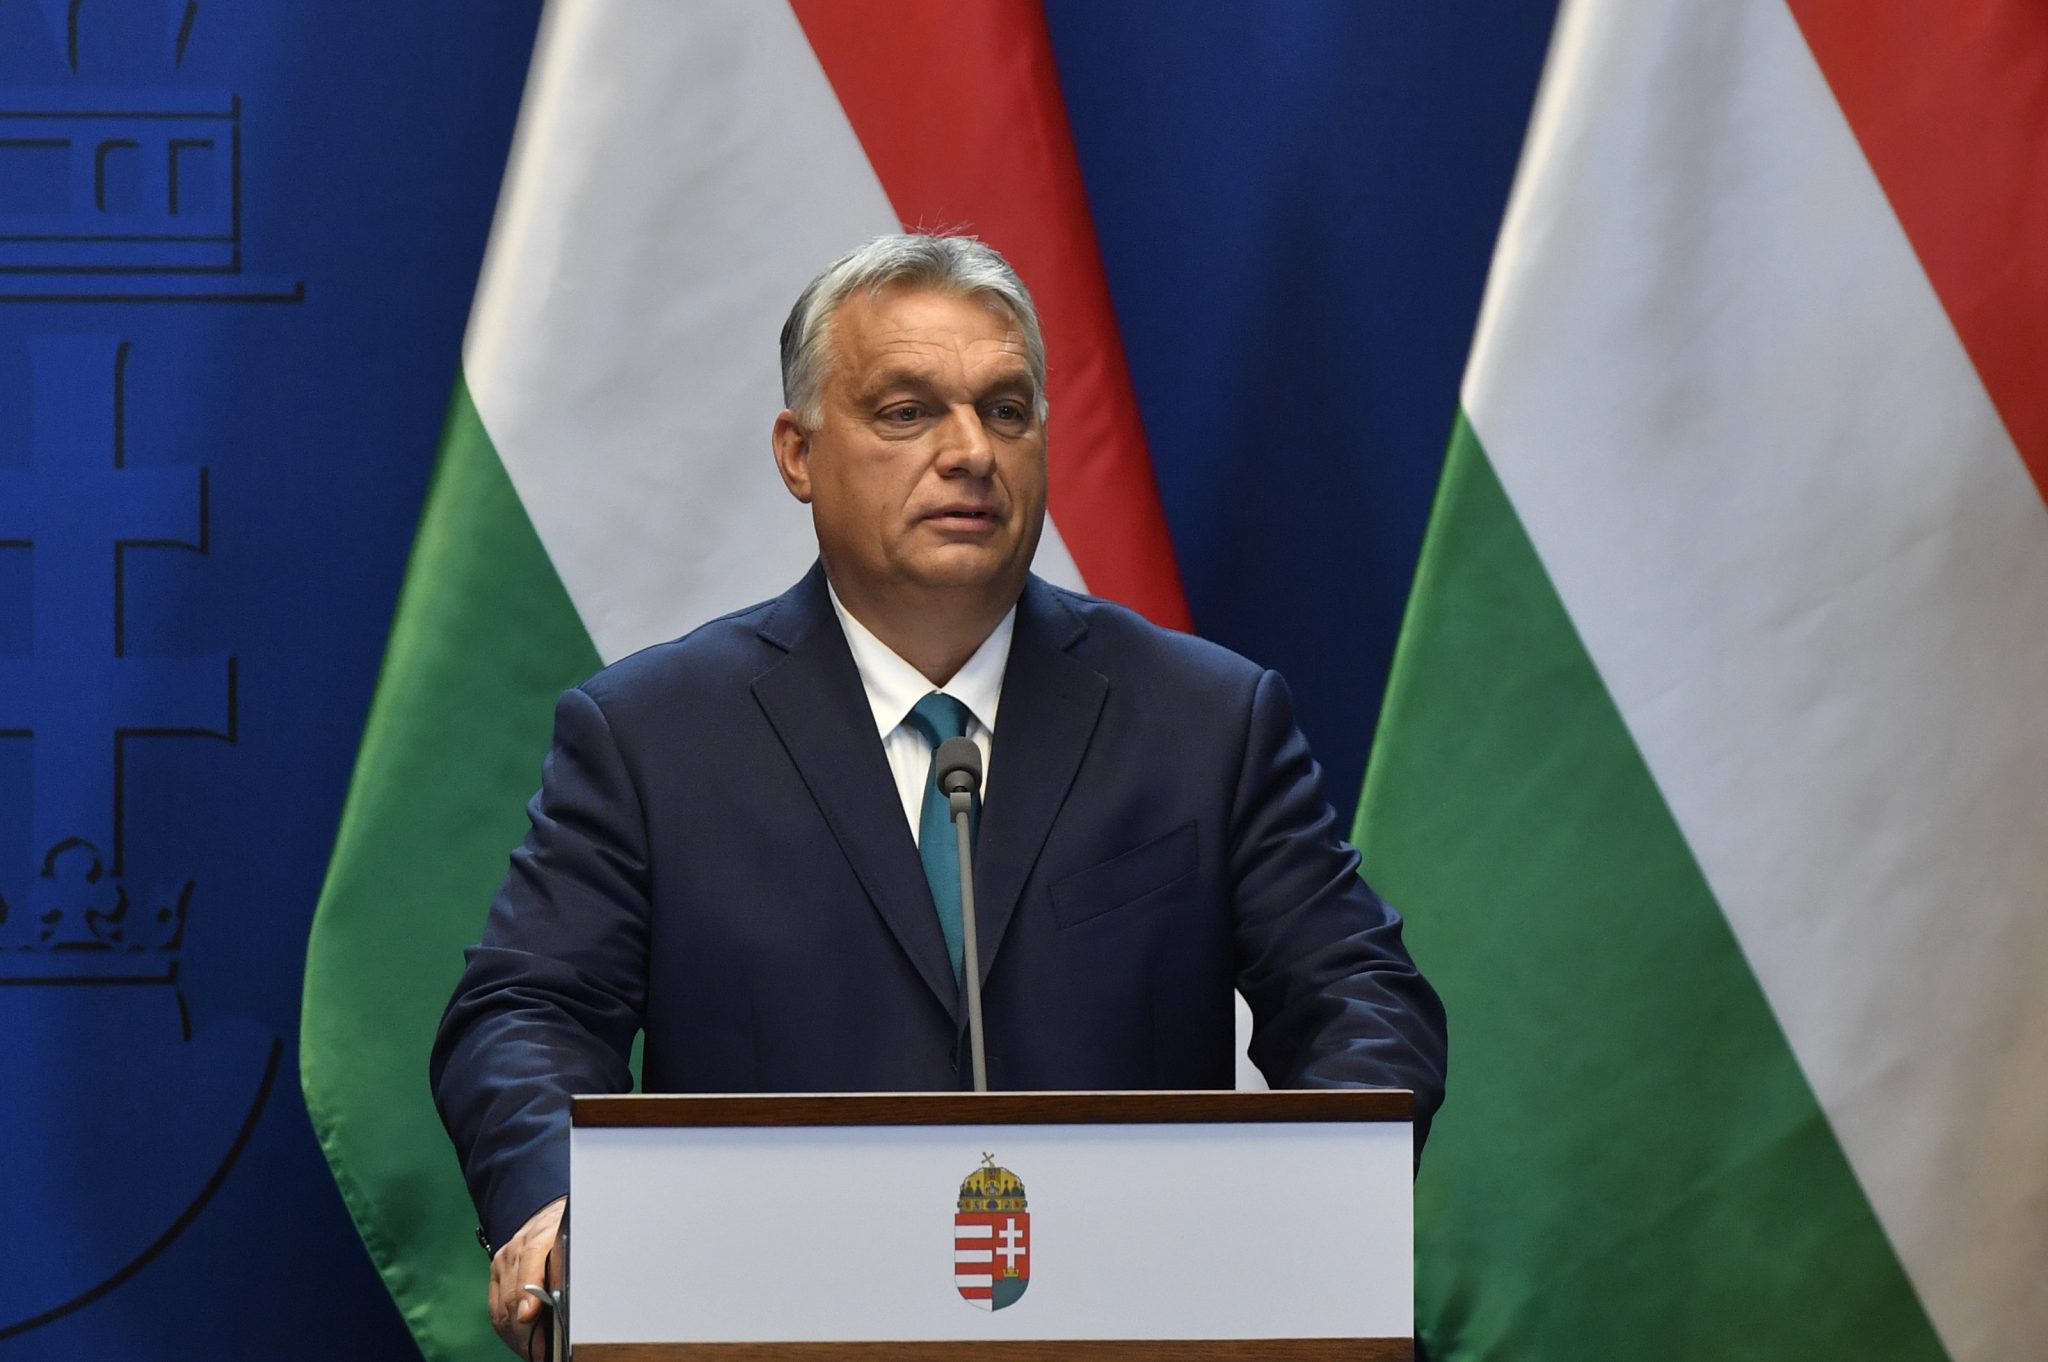 Hungary’s PM: Coronavirus Response Focusing On Individual Cases